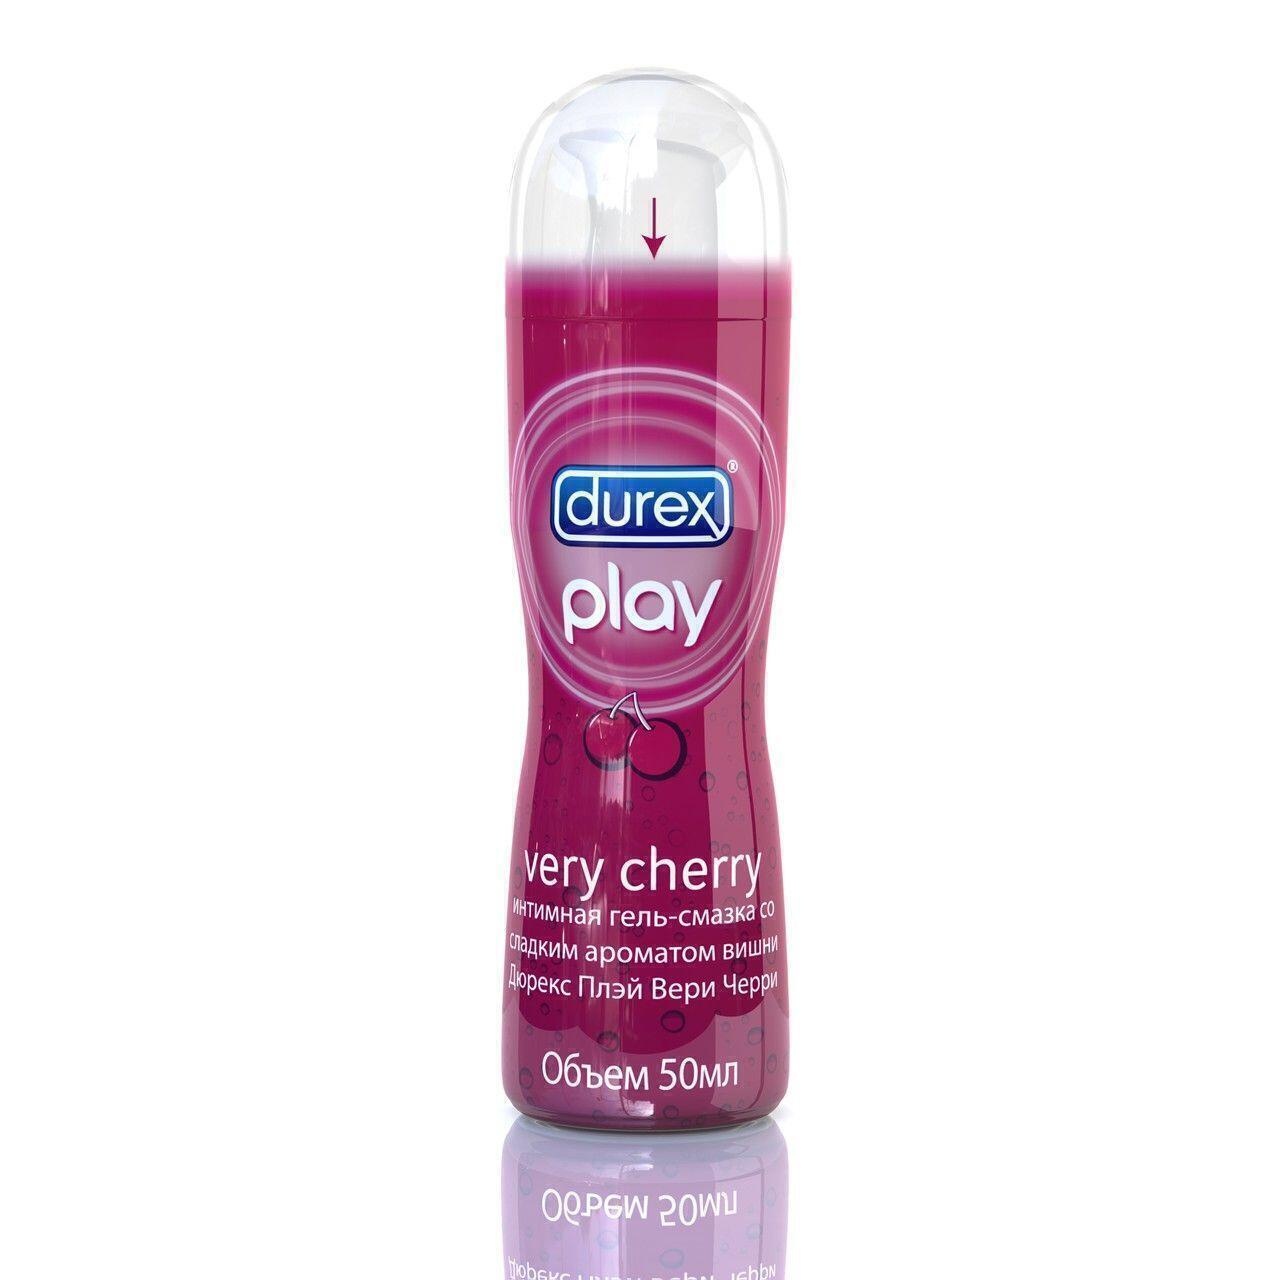 Смазка Durex Play Cherry на водной основе, 50 мл флакон